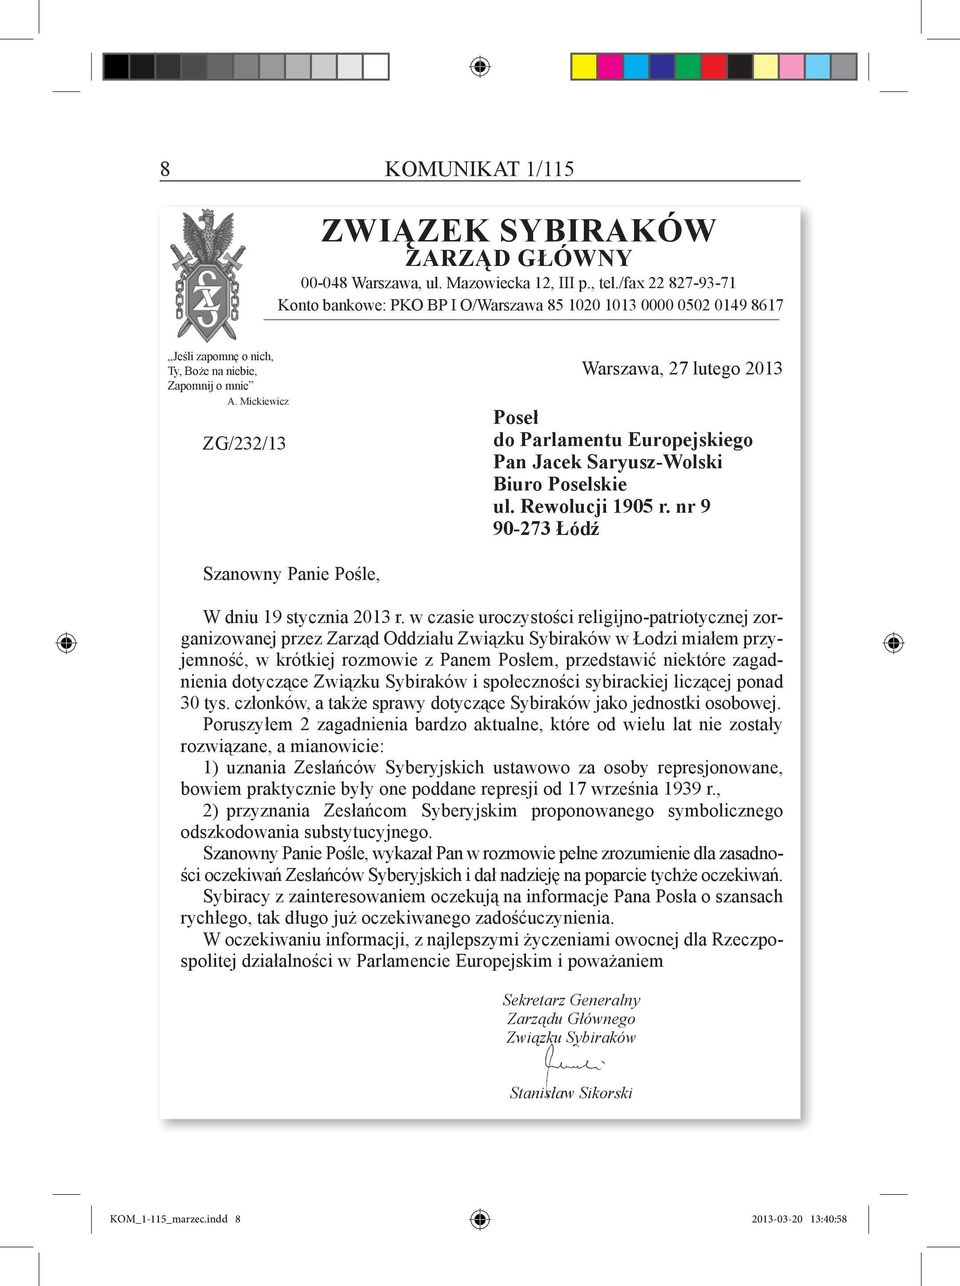 Mickiewicz ZG/232/13 Warszawa, 27 lutego 2013 Poseł do Parlamentu europejskiego Pan jacek Saryusz-wolski biuro Poselskie ul. rewolucji 1905 r.